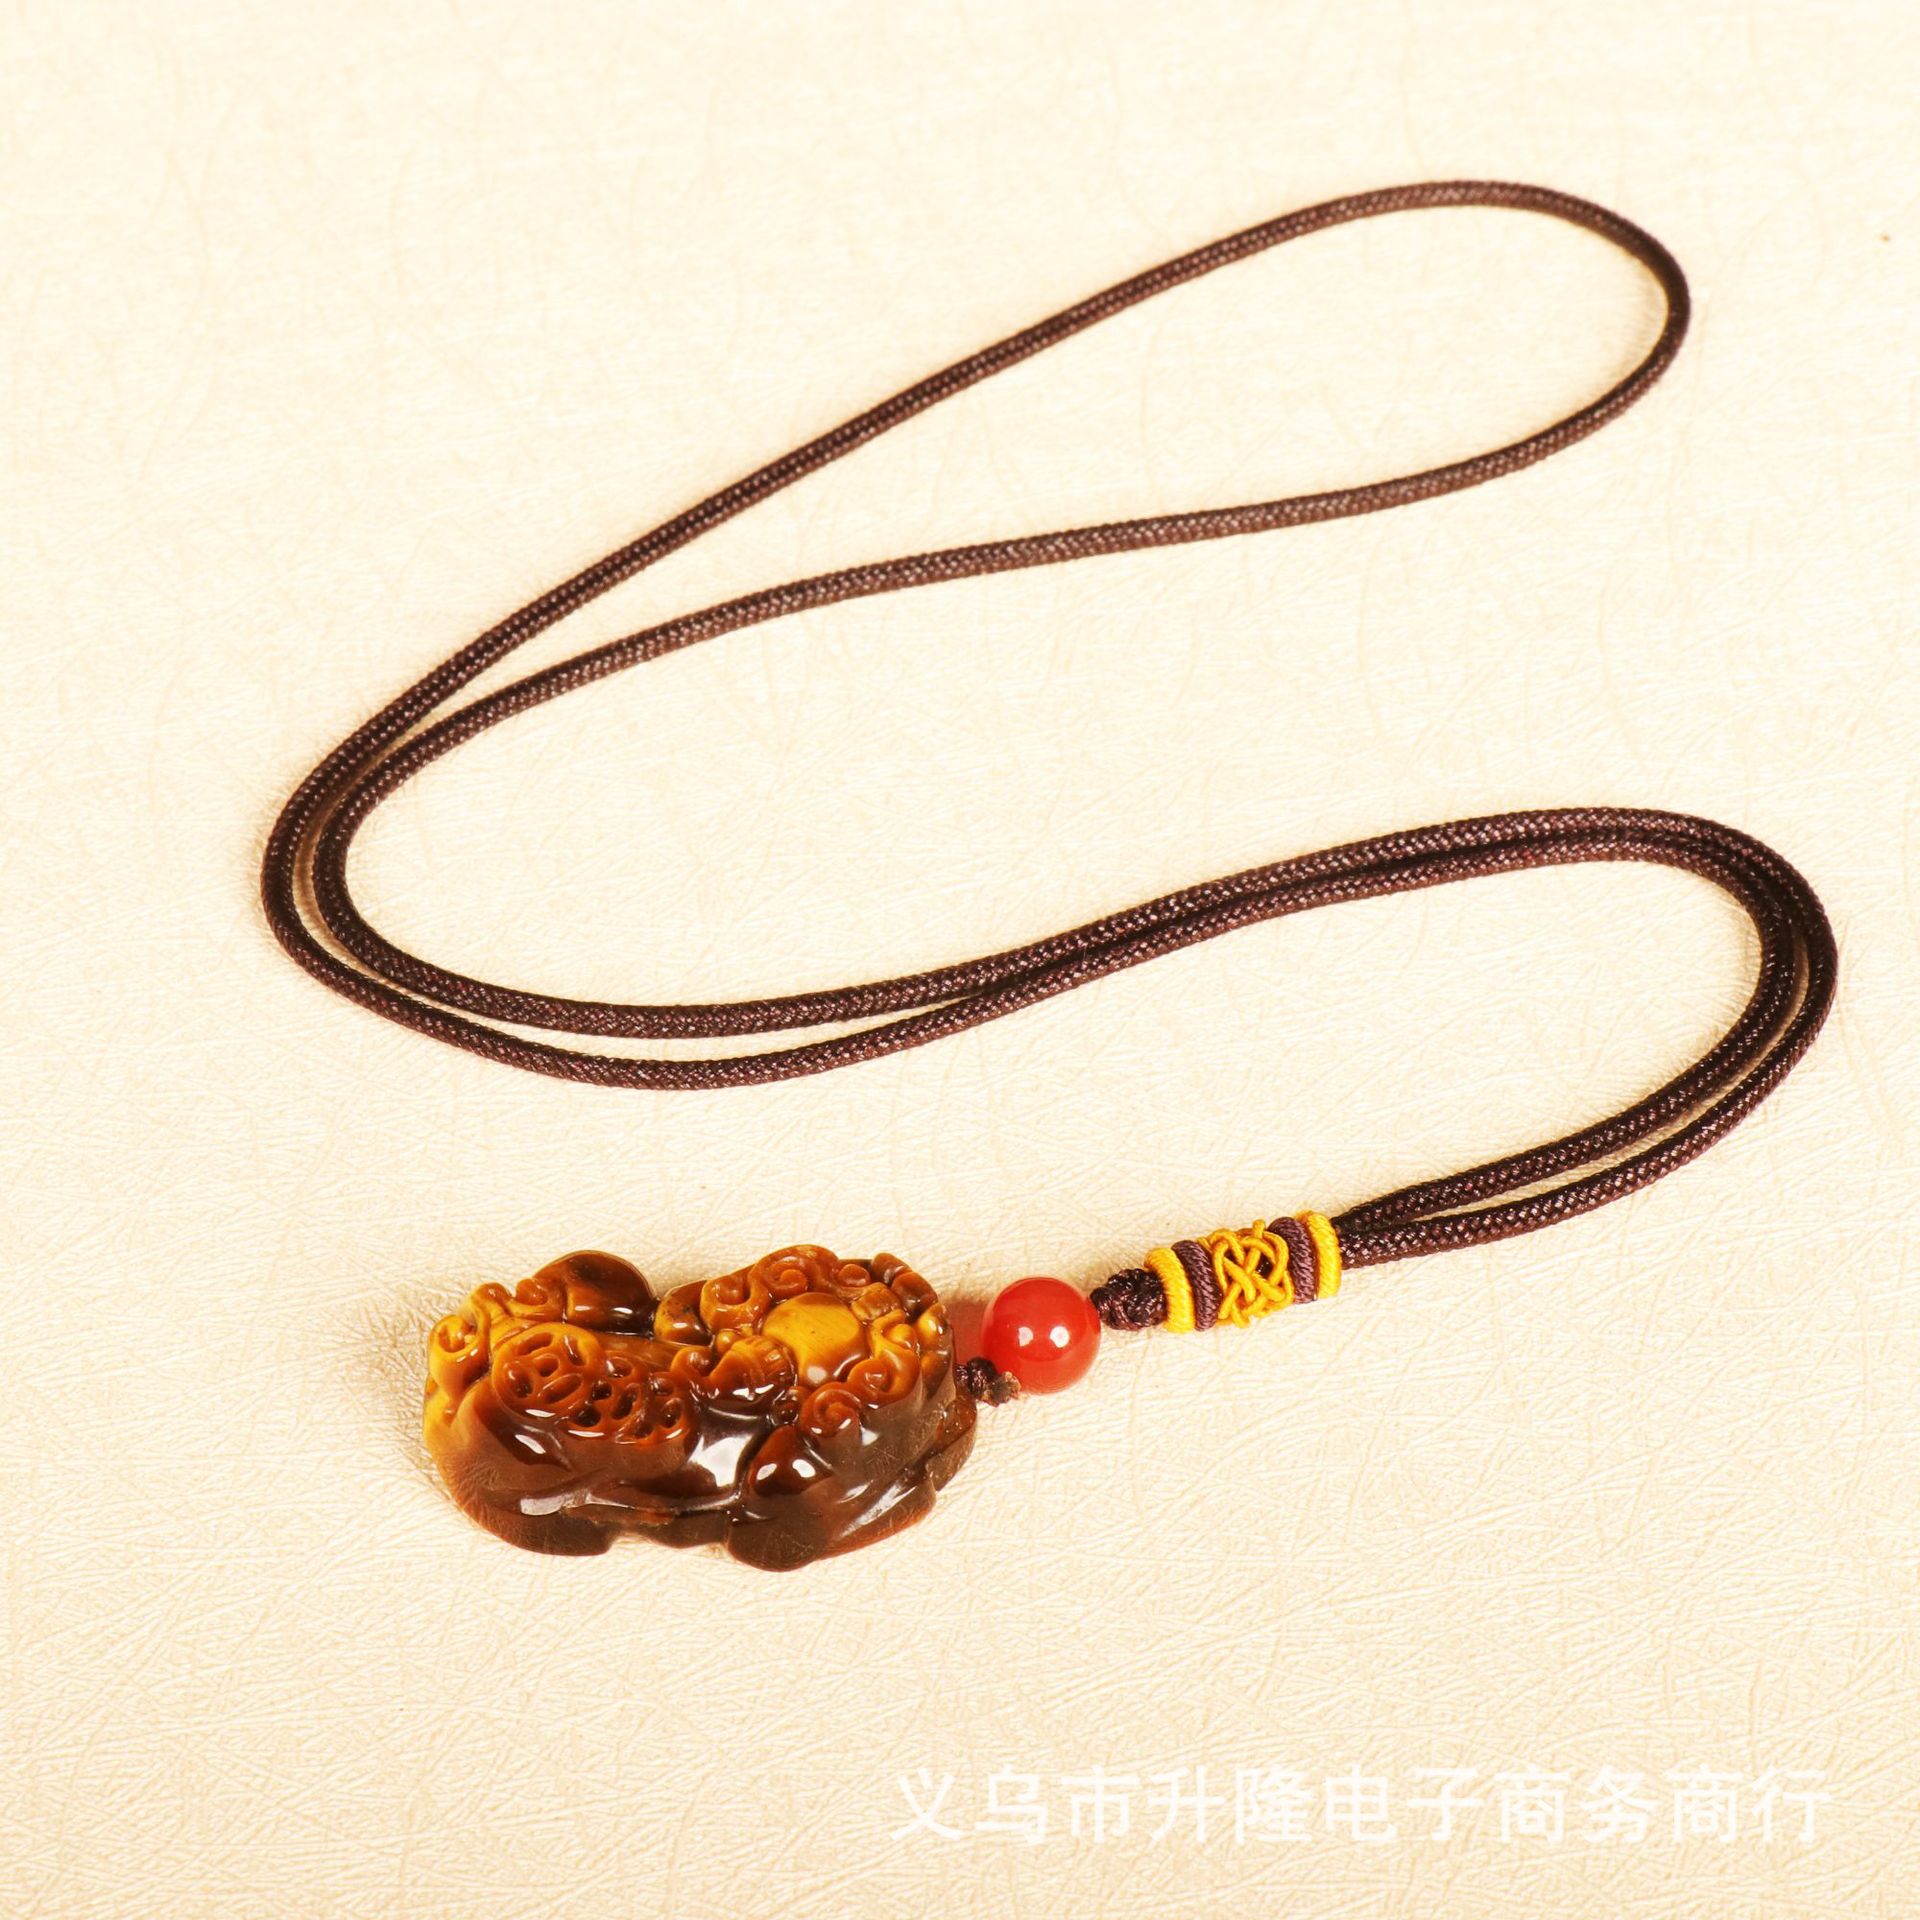 1:Necklace pendant